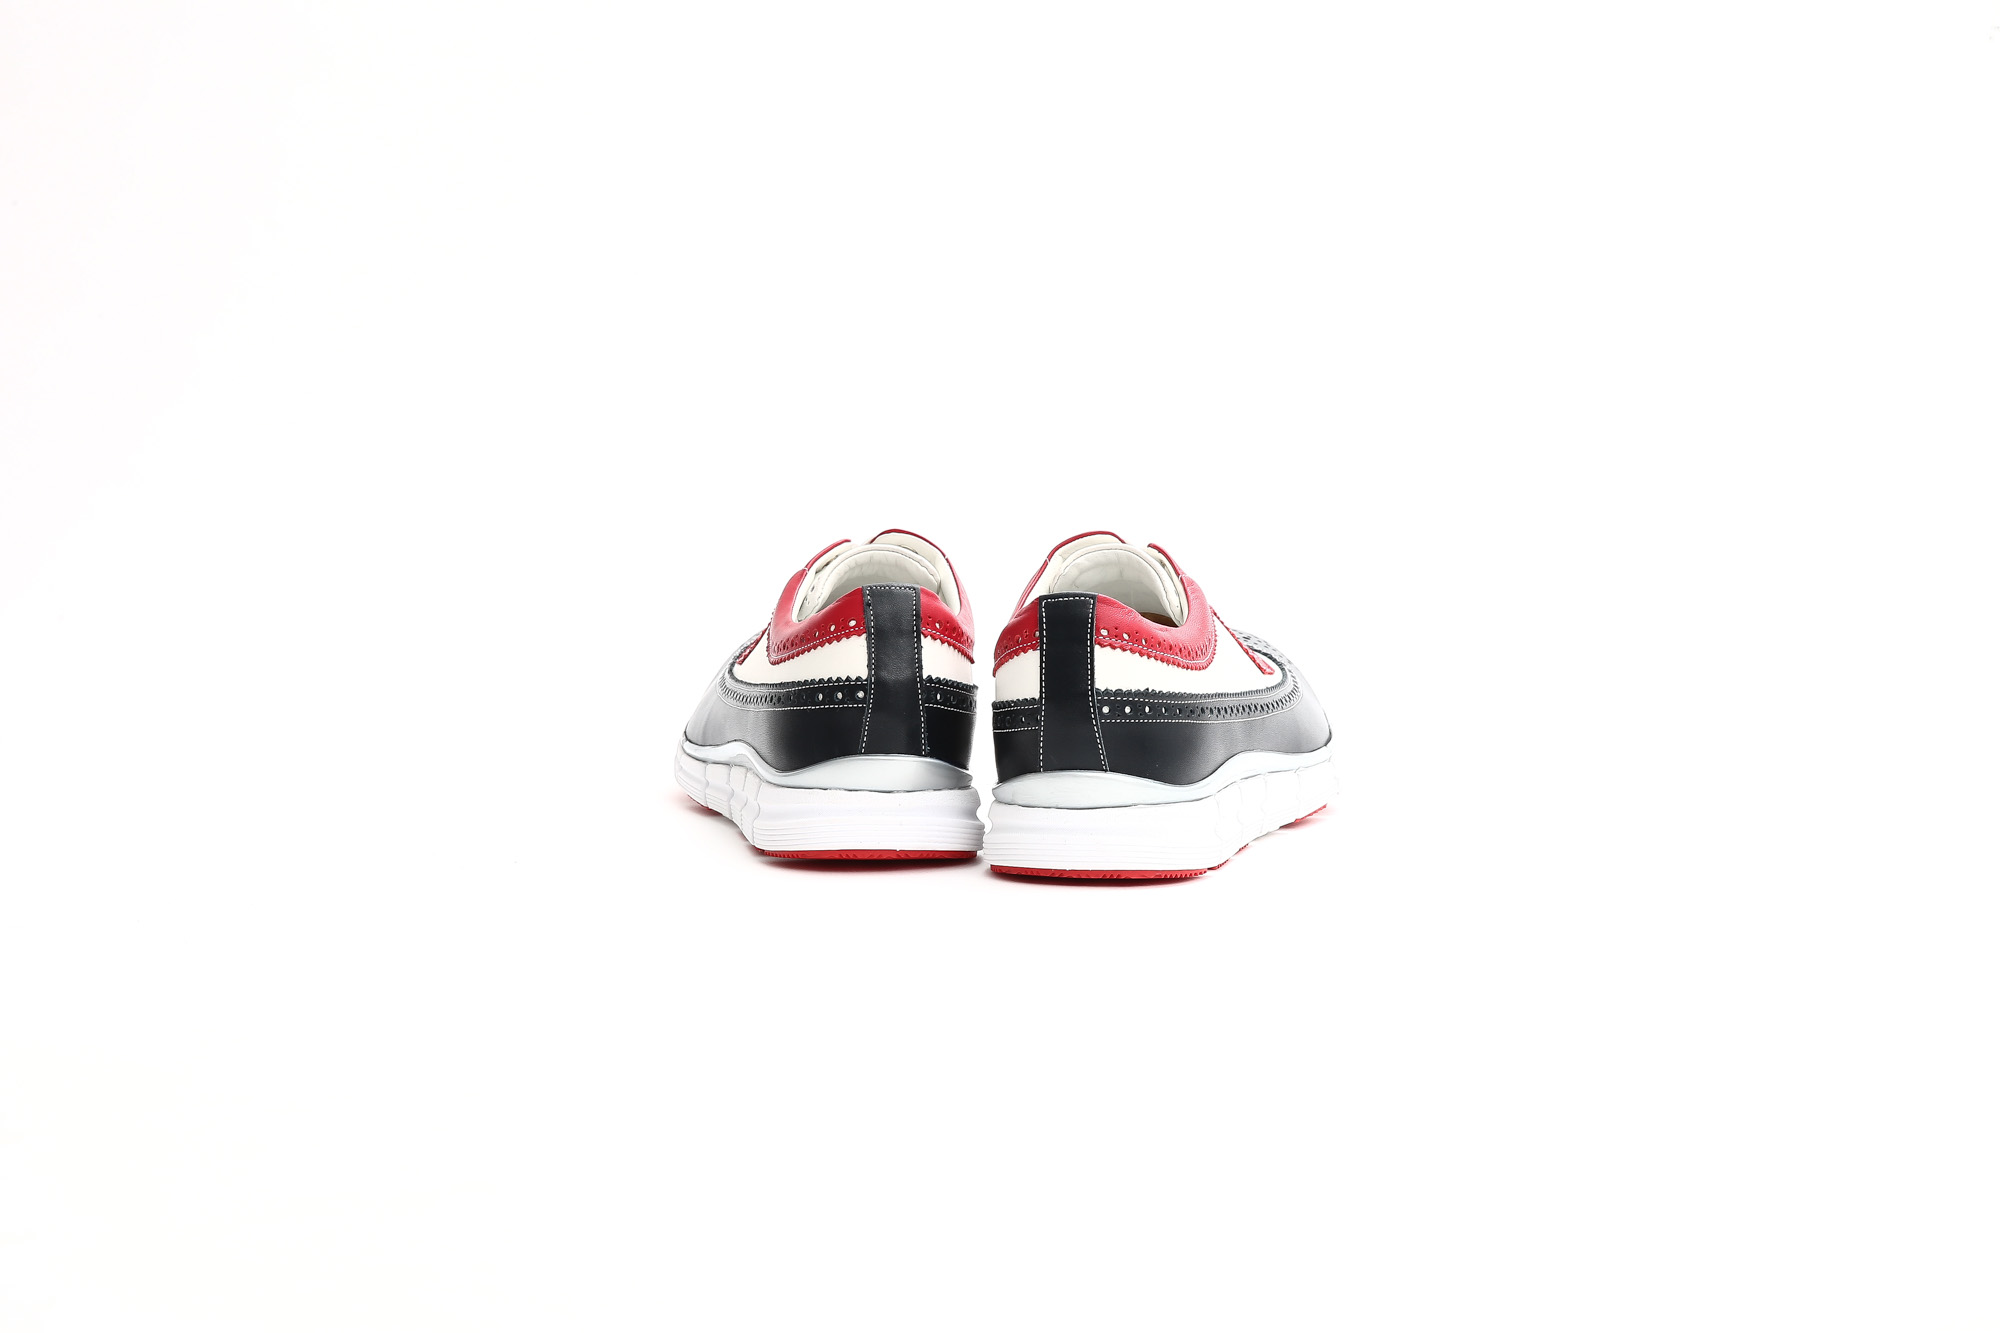 【HIROSHI TSUBOUCHI / ヒロシツボウチ】 HTO-AD05 Wingtip Sneakers トリコロールカラー Calf Leather カーフレザー ウィングチップ スニーカー NAVY / WHITE / RED (ネイビー / ホワイト / レッド・NV/WH/RE) Made in Japan (日本製) 2017 秋冬新作　hiroshitsubouchi ヒロシツボウチ 木梨則武 ノリさん C.ロナウド クリスティアーノロナウド トリコカラー とんねるずのみなさんのおかげでした トリコロール